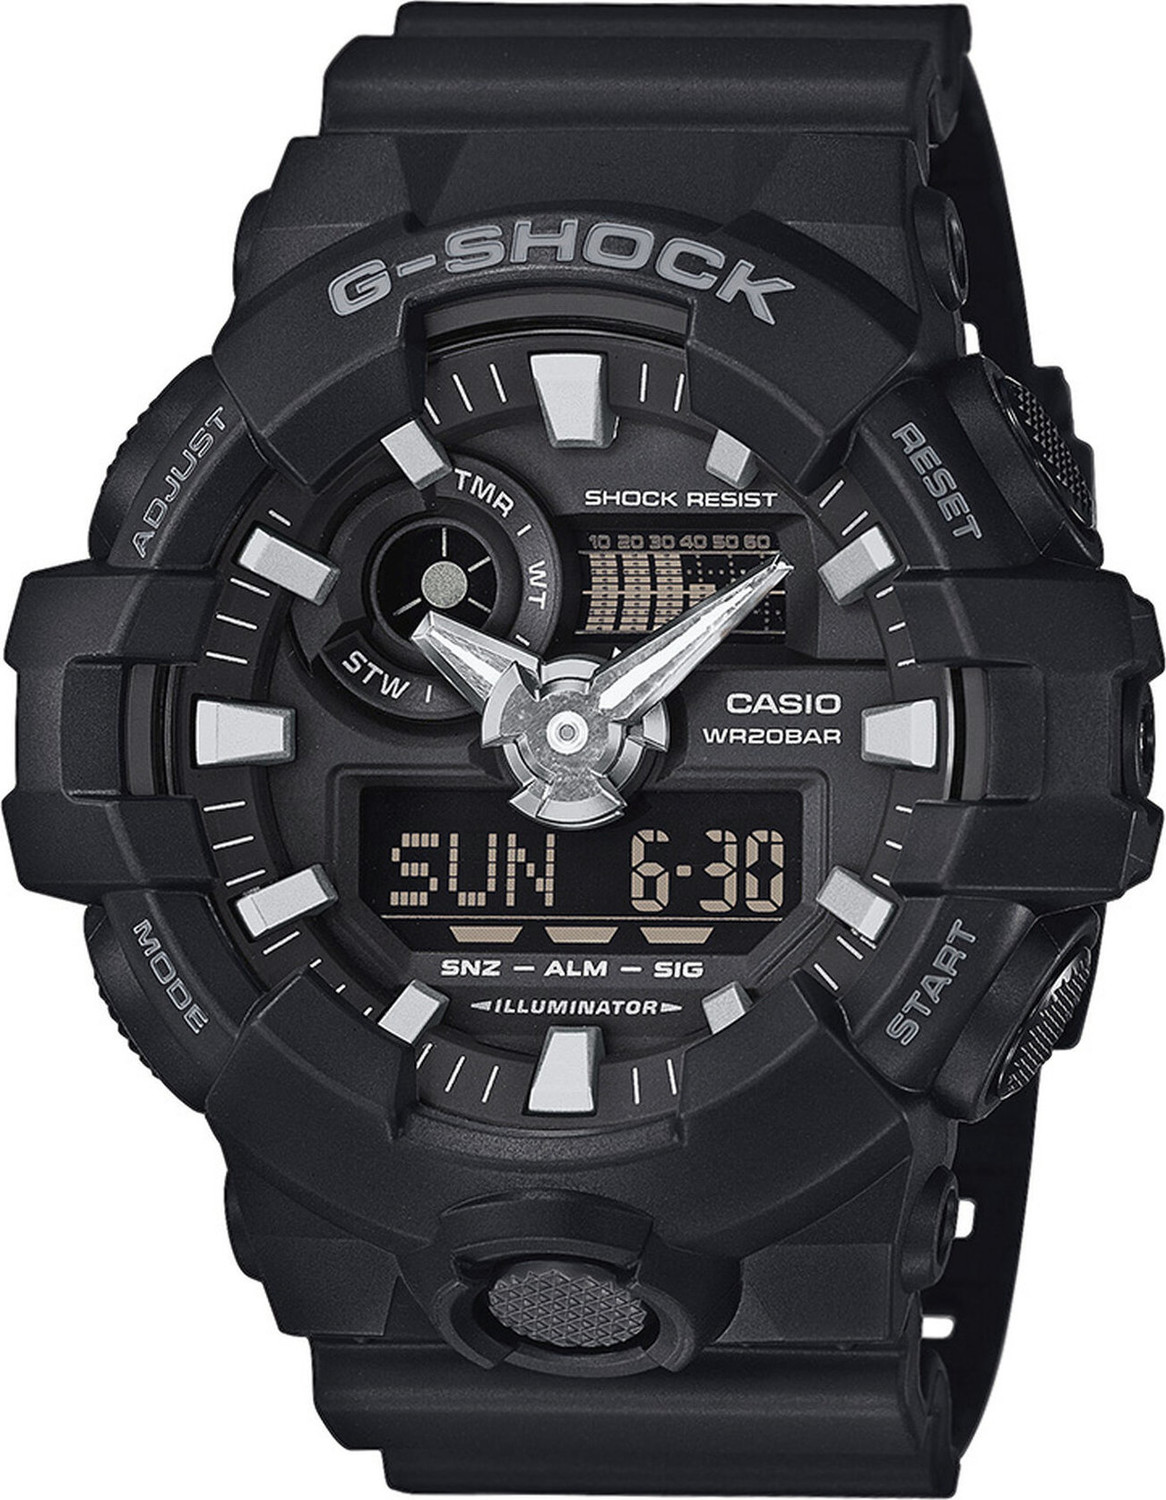 Hodinky G-Shock GA-700-1BER Black/Black